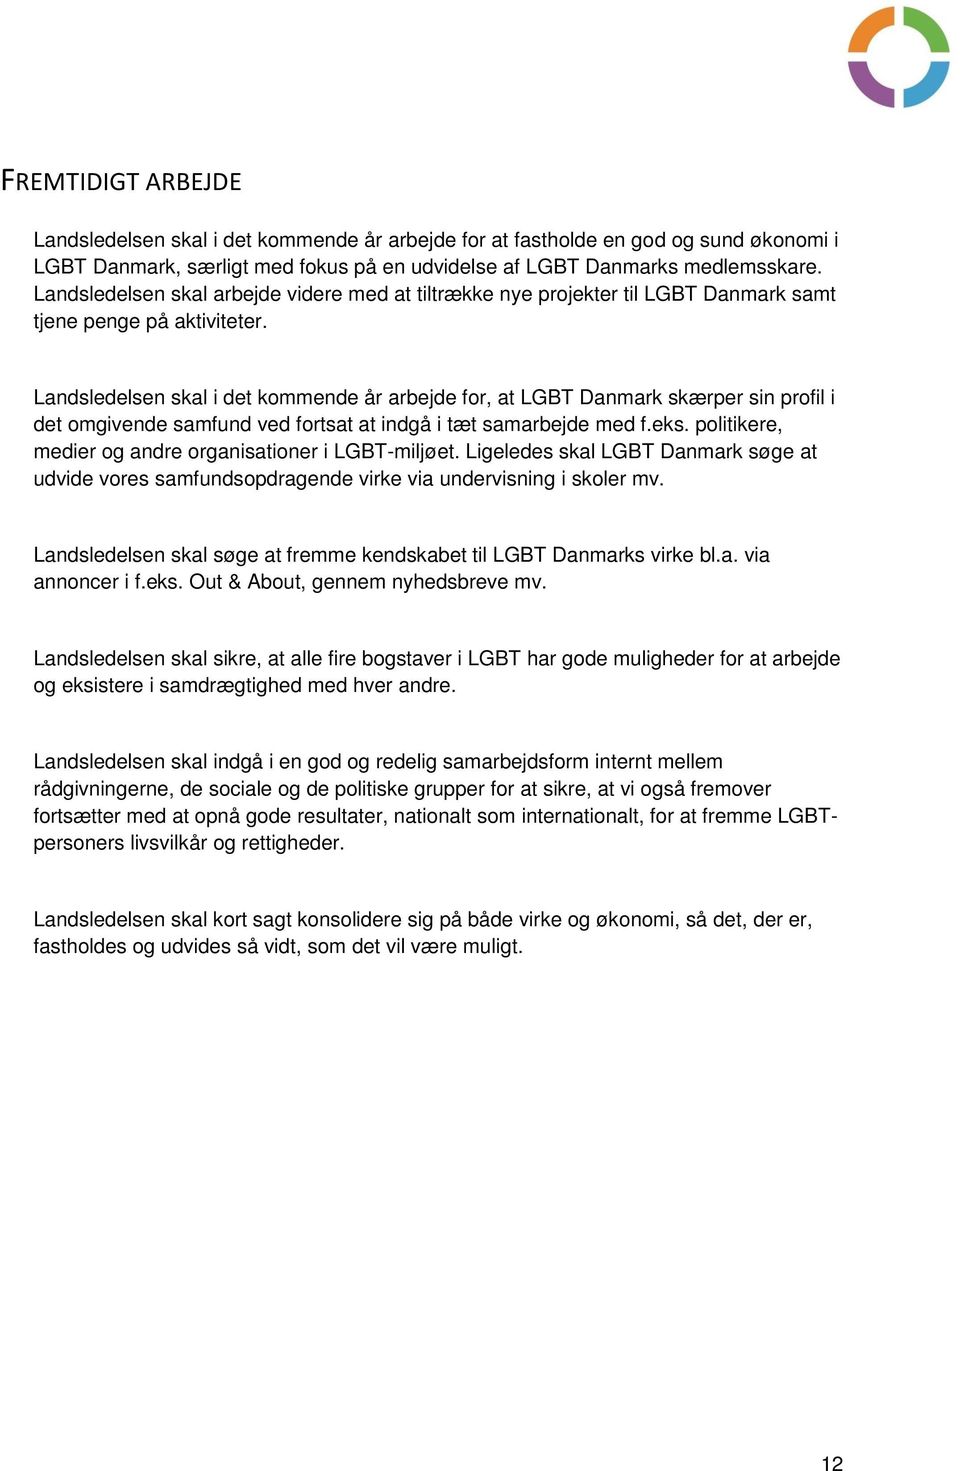 Landsledelsen skal i det kommende år arbejde for, at LGBT Danmark skærper sin profil i det omgivende samfund ved fortsat at indgå i tæt samarbejde med f.eks.